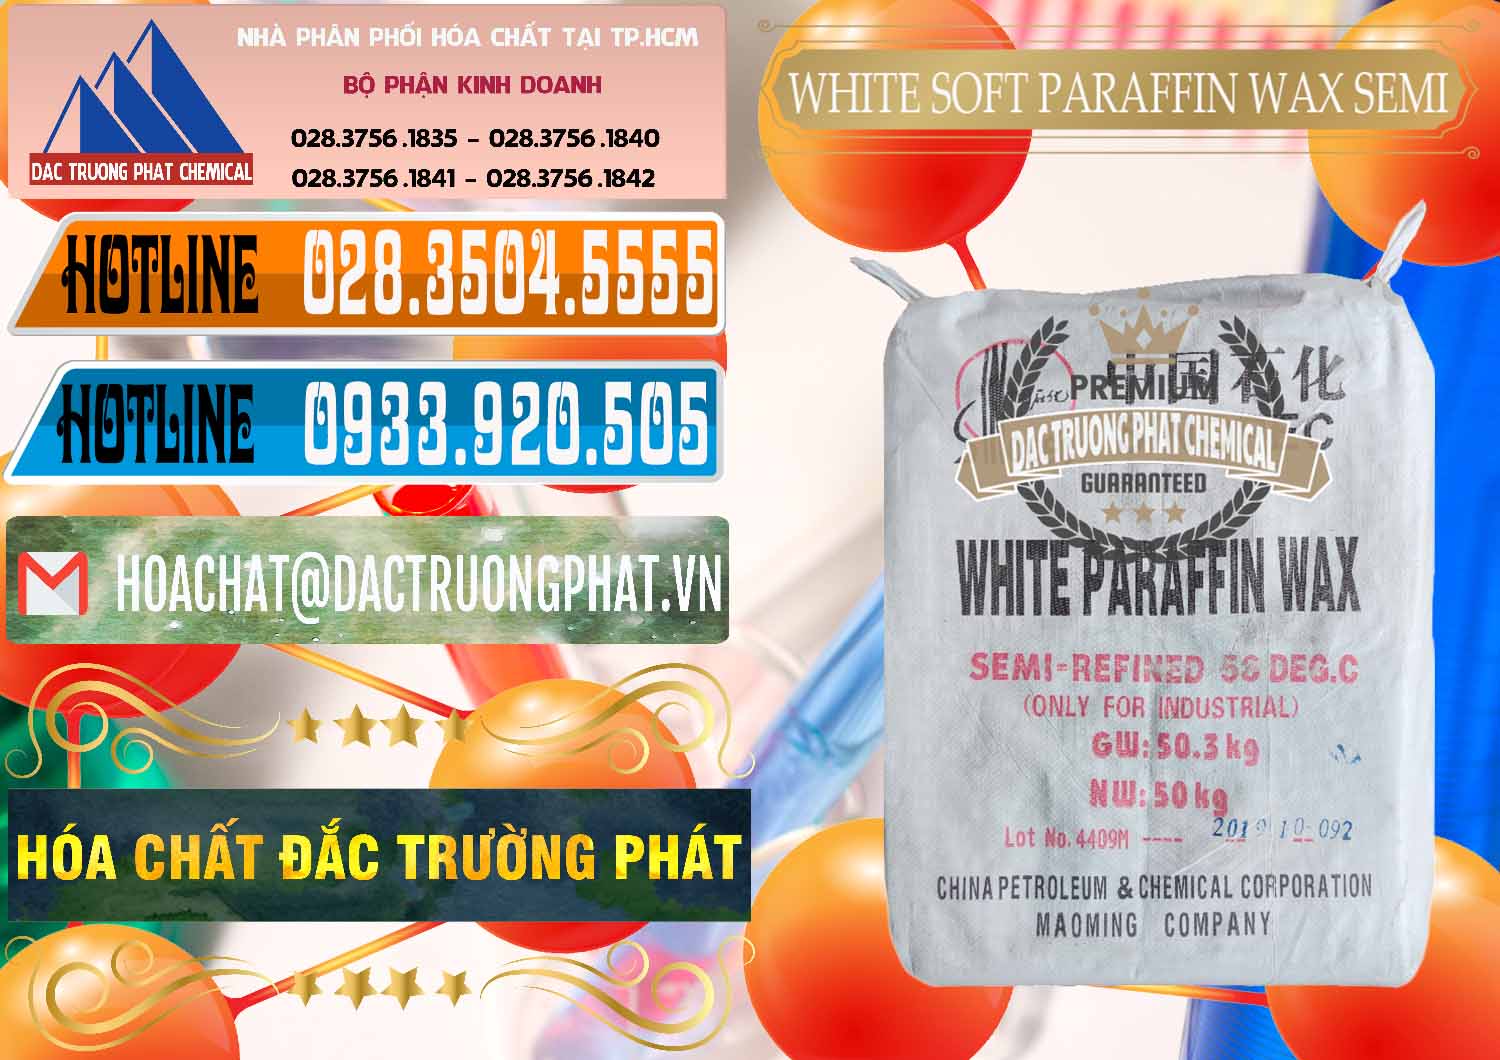 Cty nhập khẩu _ bán Sáp Paraffin Wax Sinopec Trung Quốc China - 0328 - Cty chuyên phân phối ( bán ) hóa chất tại TP.HCM - stmp.net